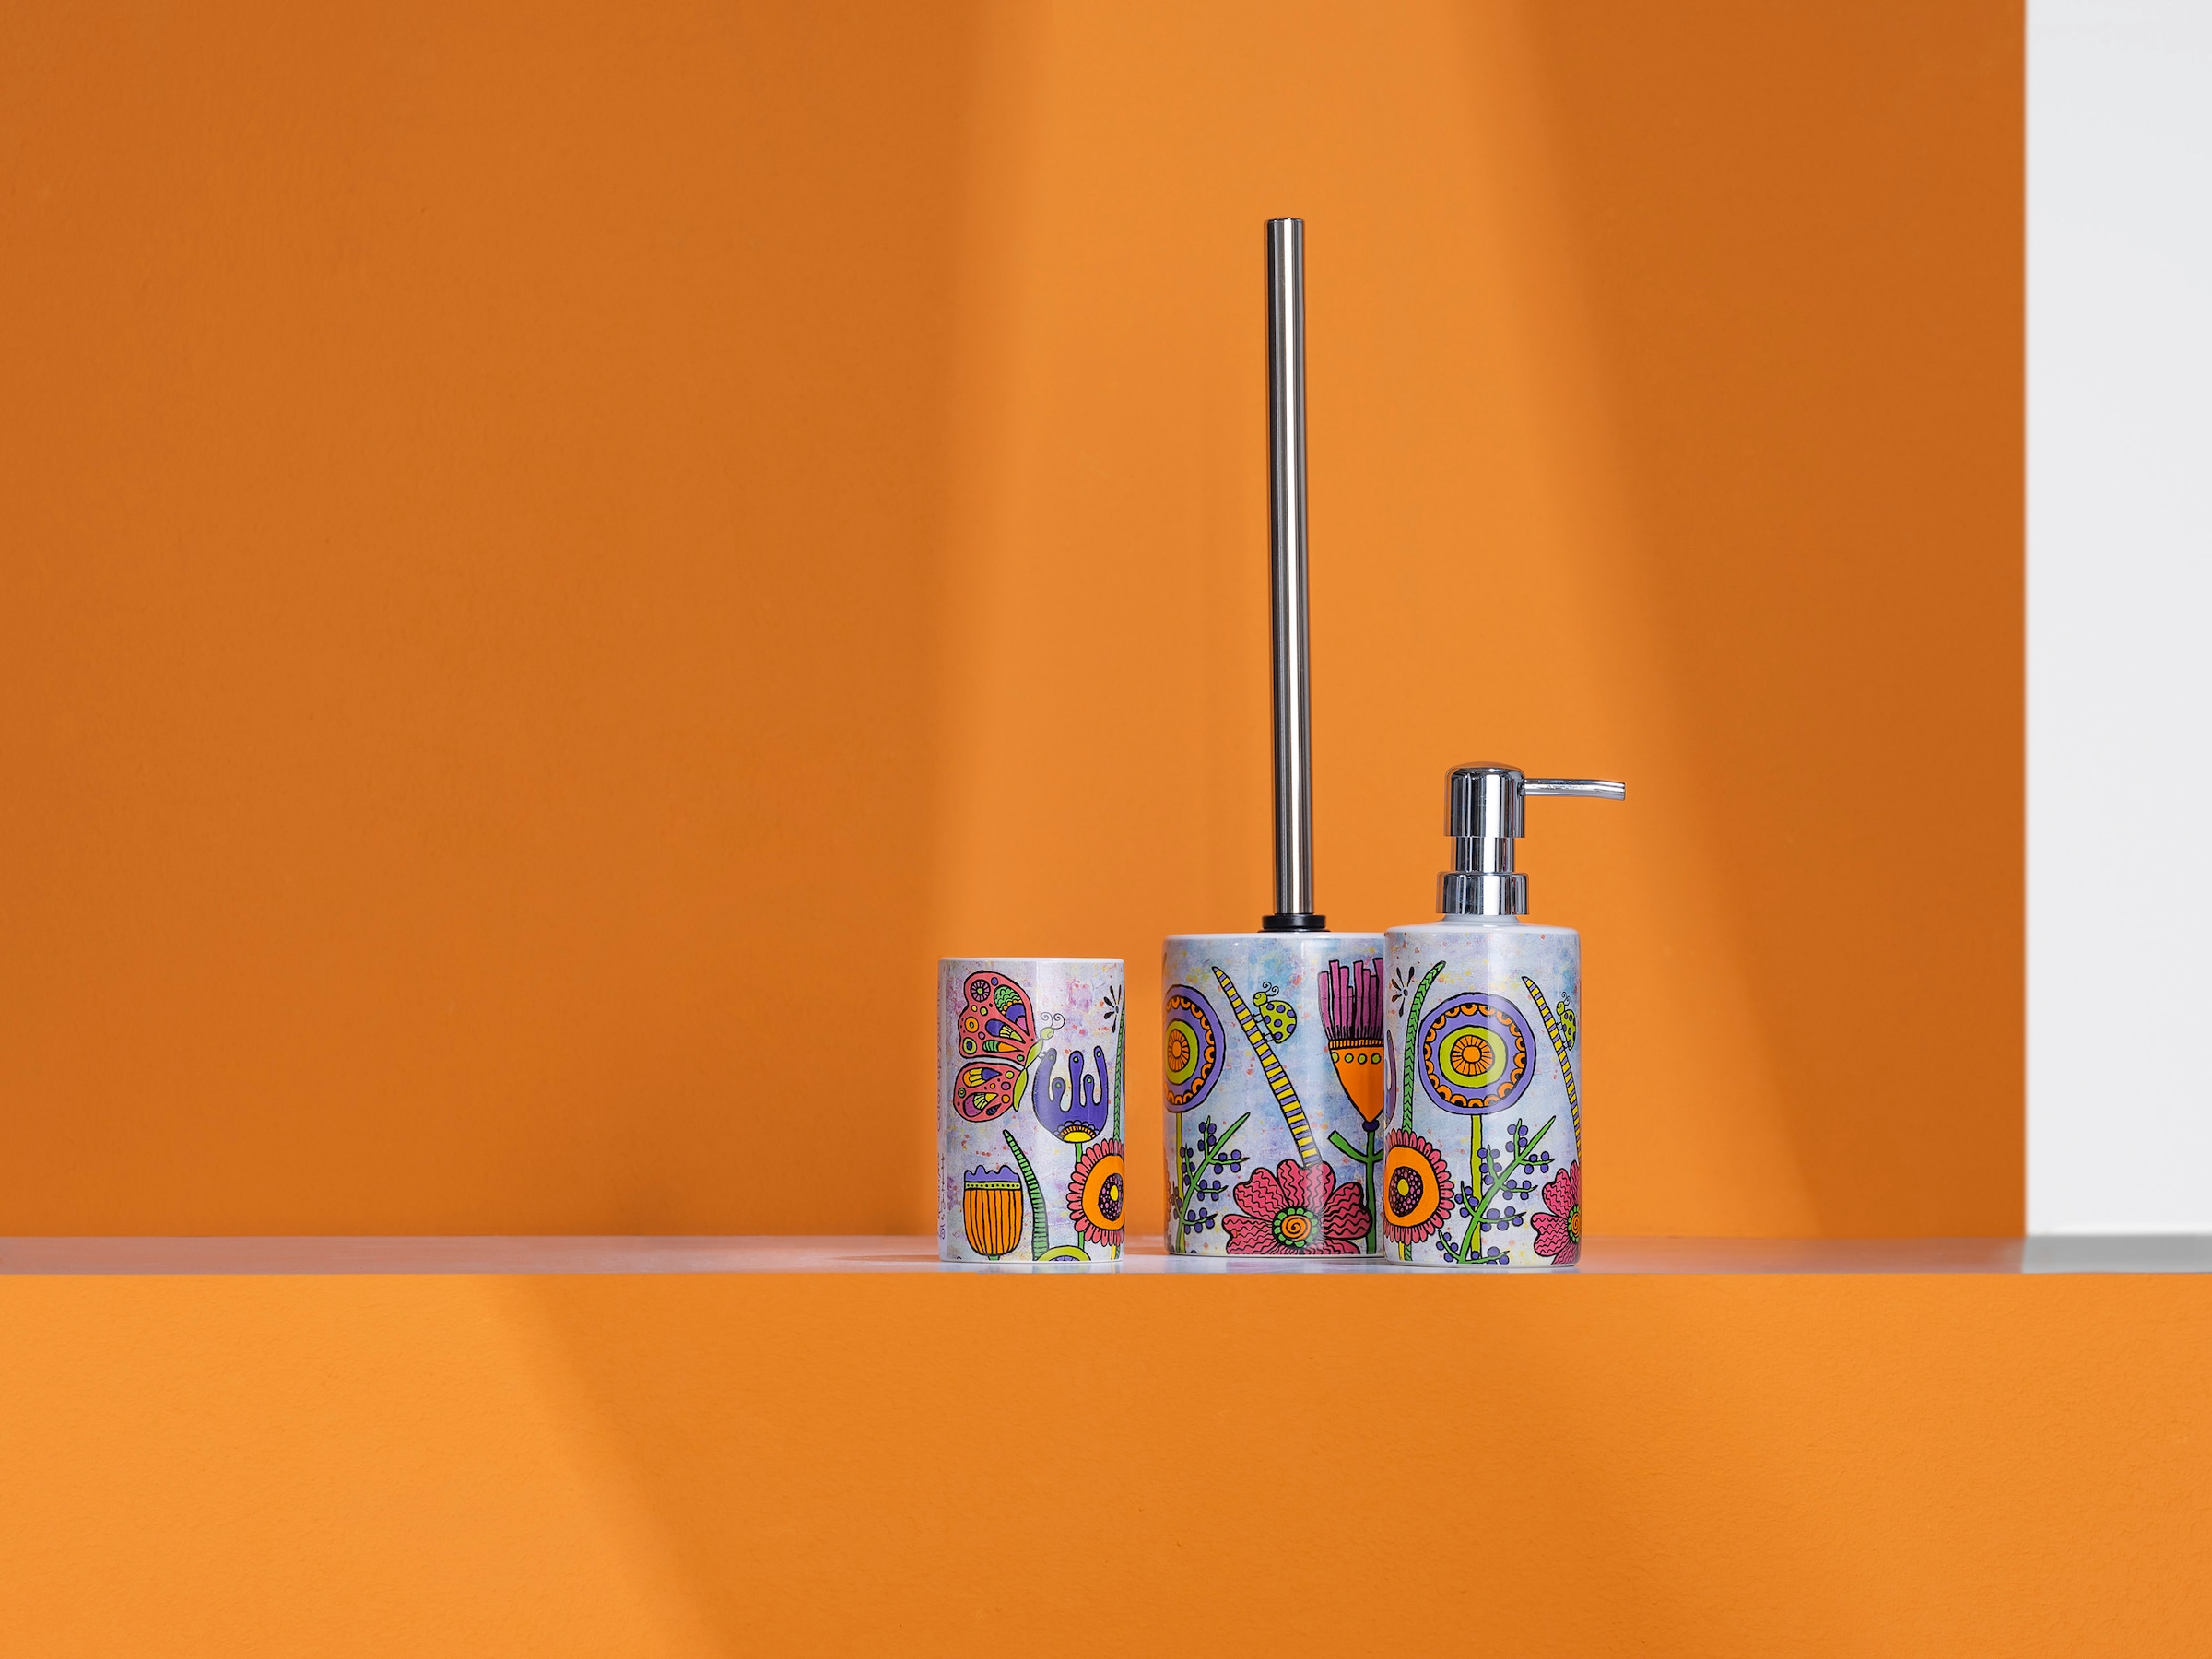 WENKO WC-Garnitur »Rollin\'Art Full Bloom«, aus Keramik, freistehend, inkl.  WC-Bürste bei OTTO